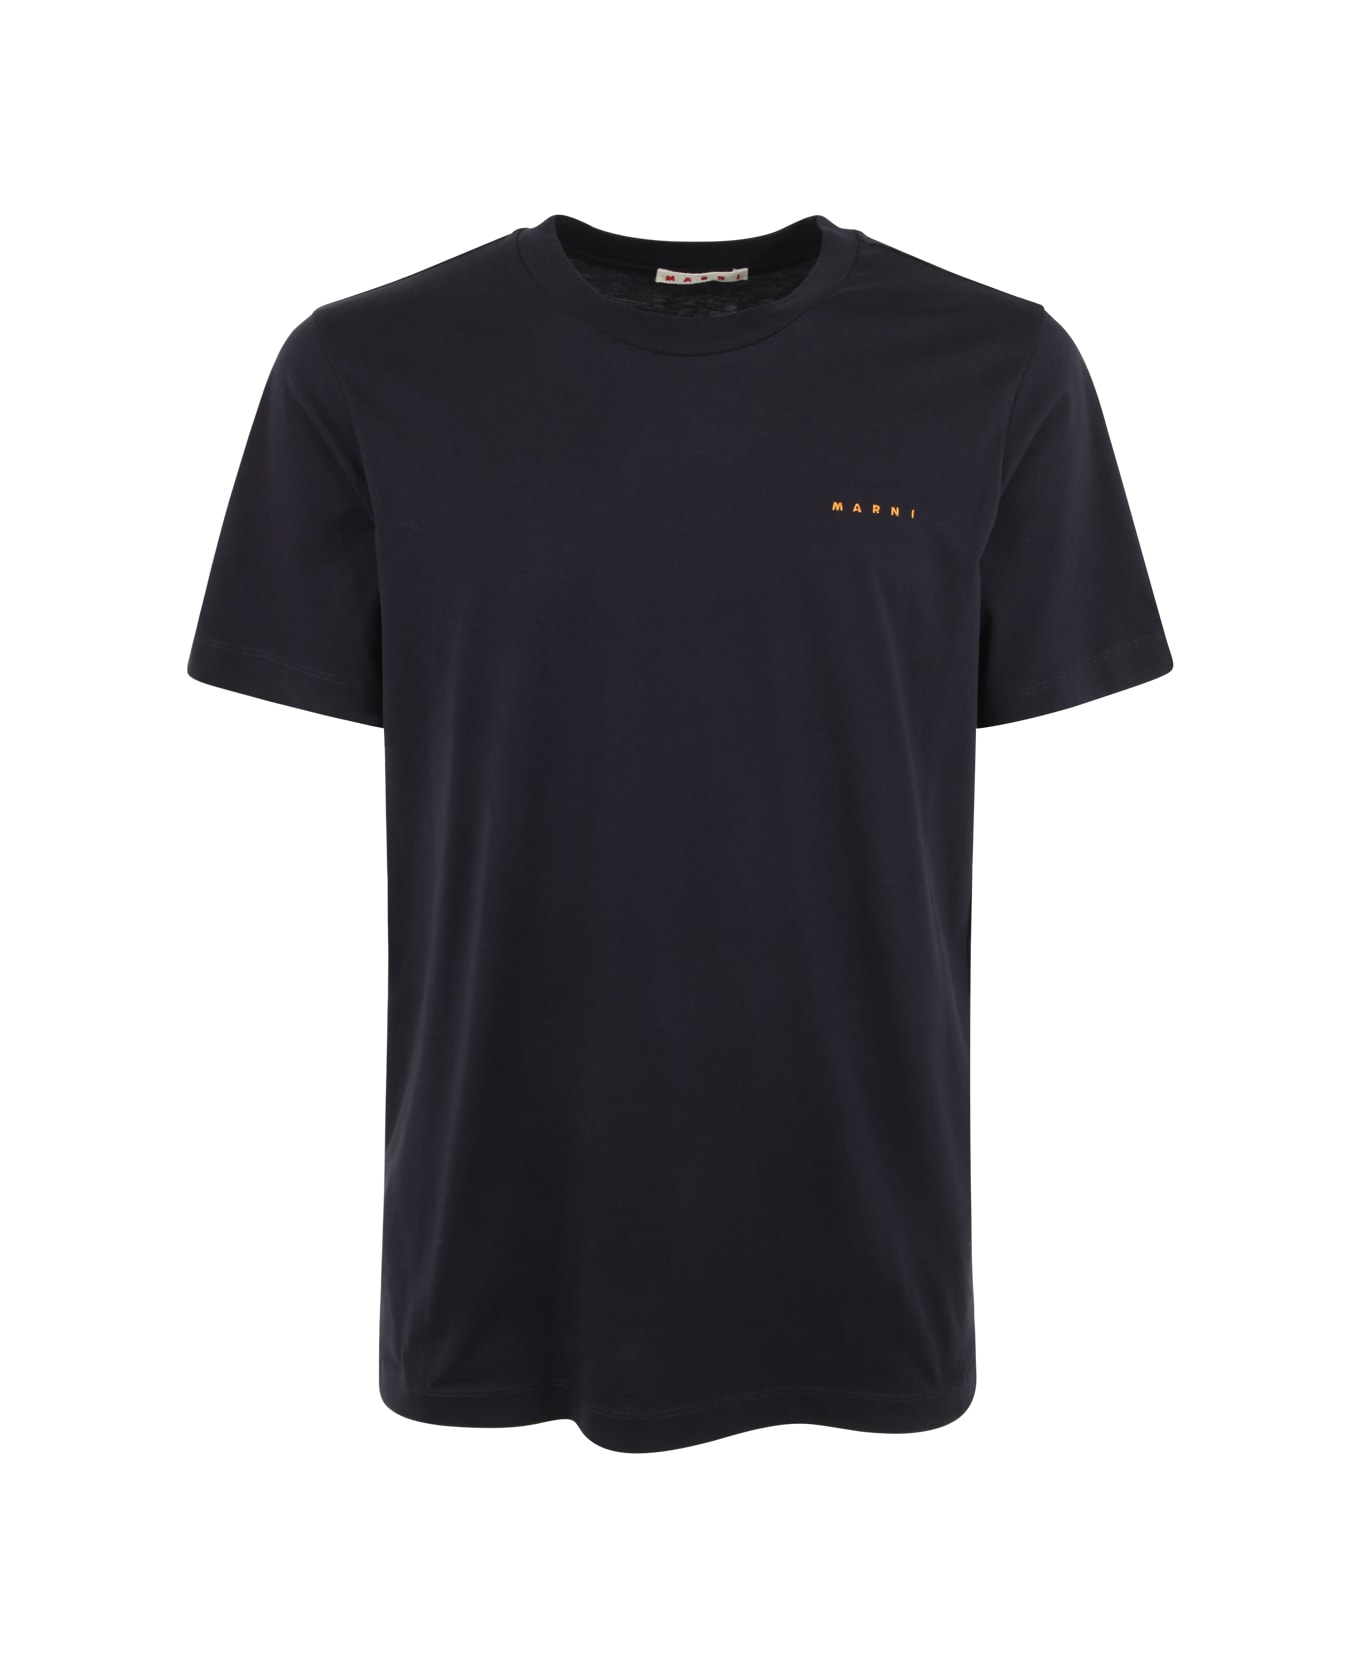 Marni T-shirt - Blublack シャツ